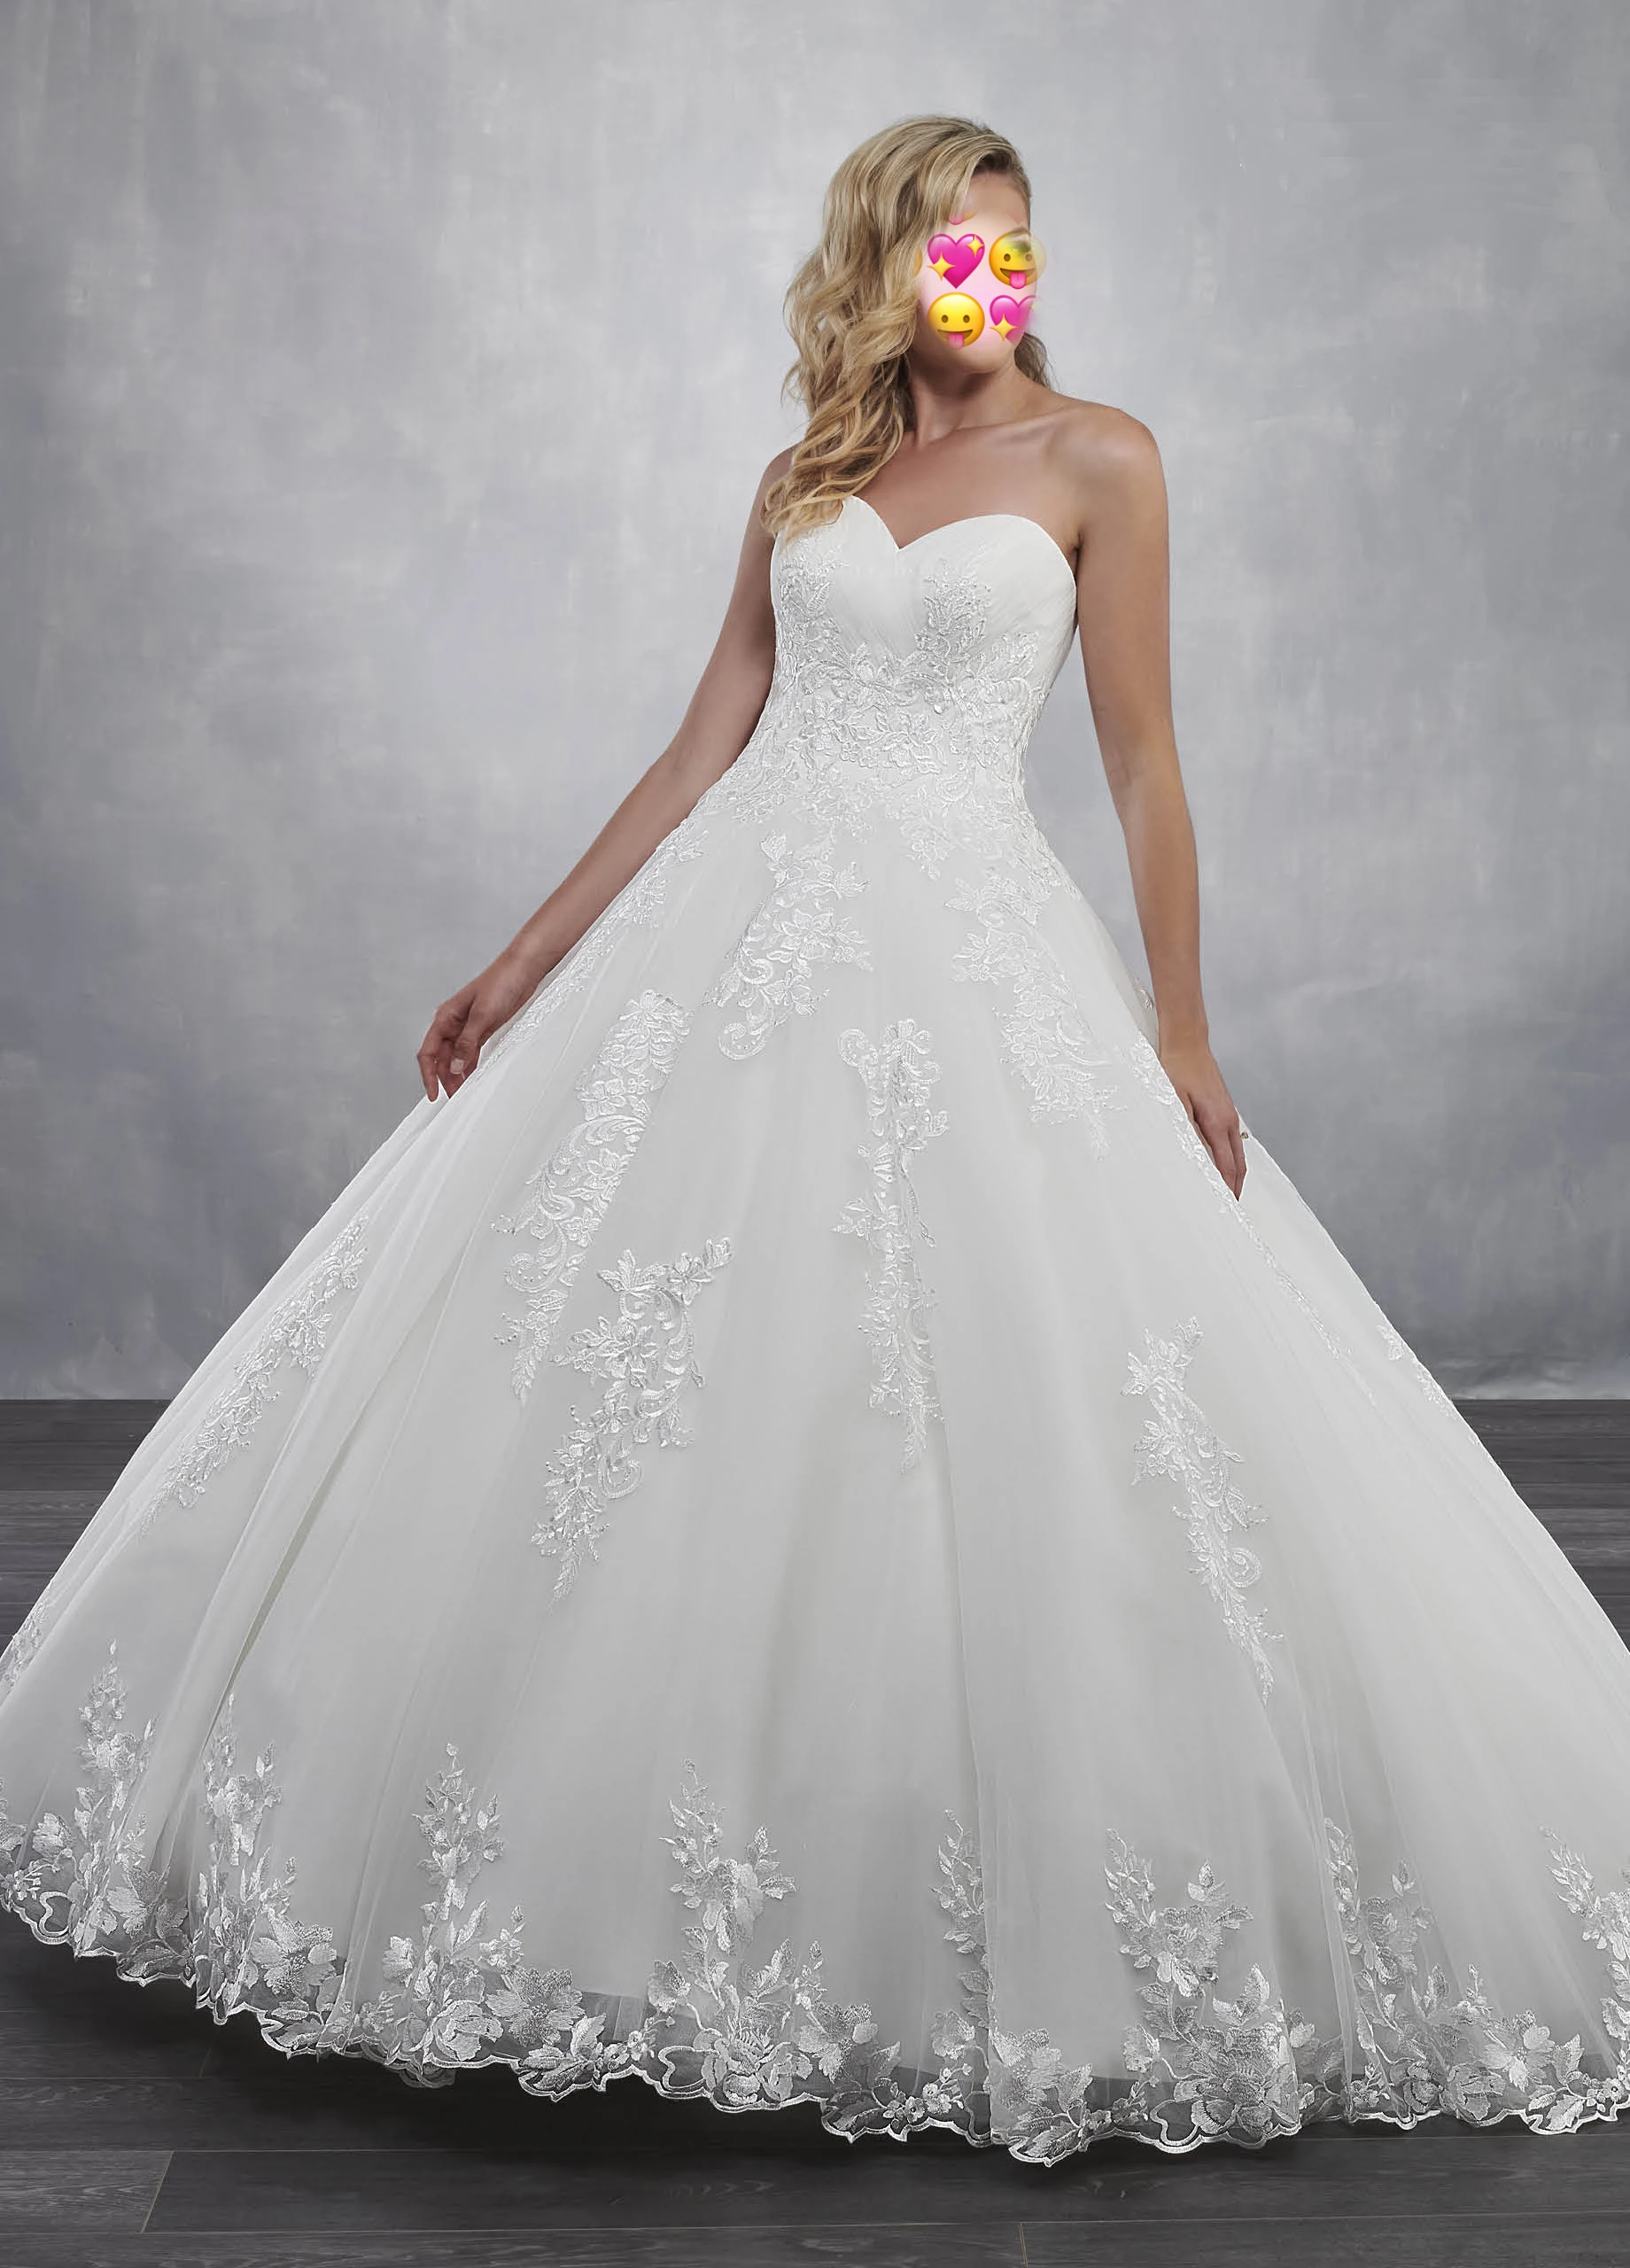 

Новый Кружева Аппликации Свадебные платья бальное платье, Vestidos De Novia 2021 Белый Милая принцесса свадебные платья размера плюс